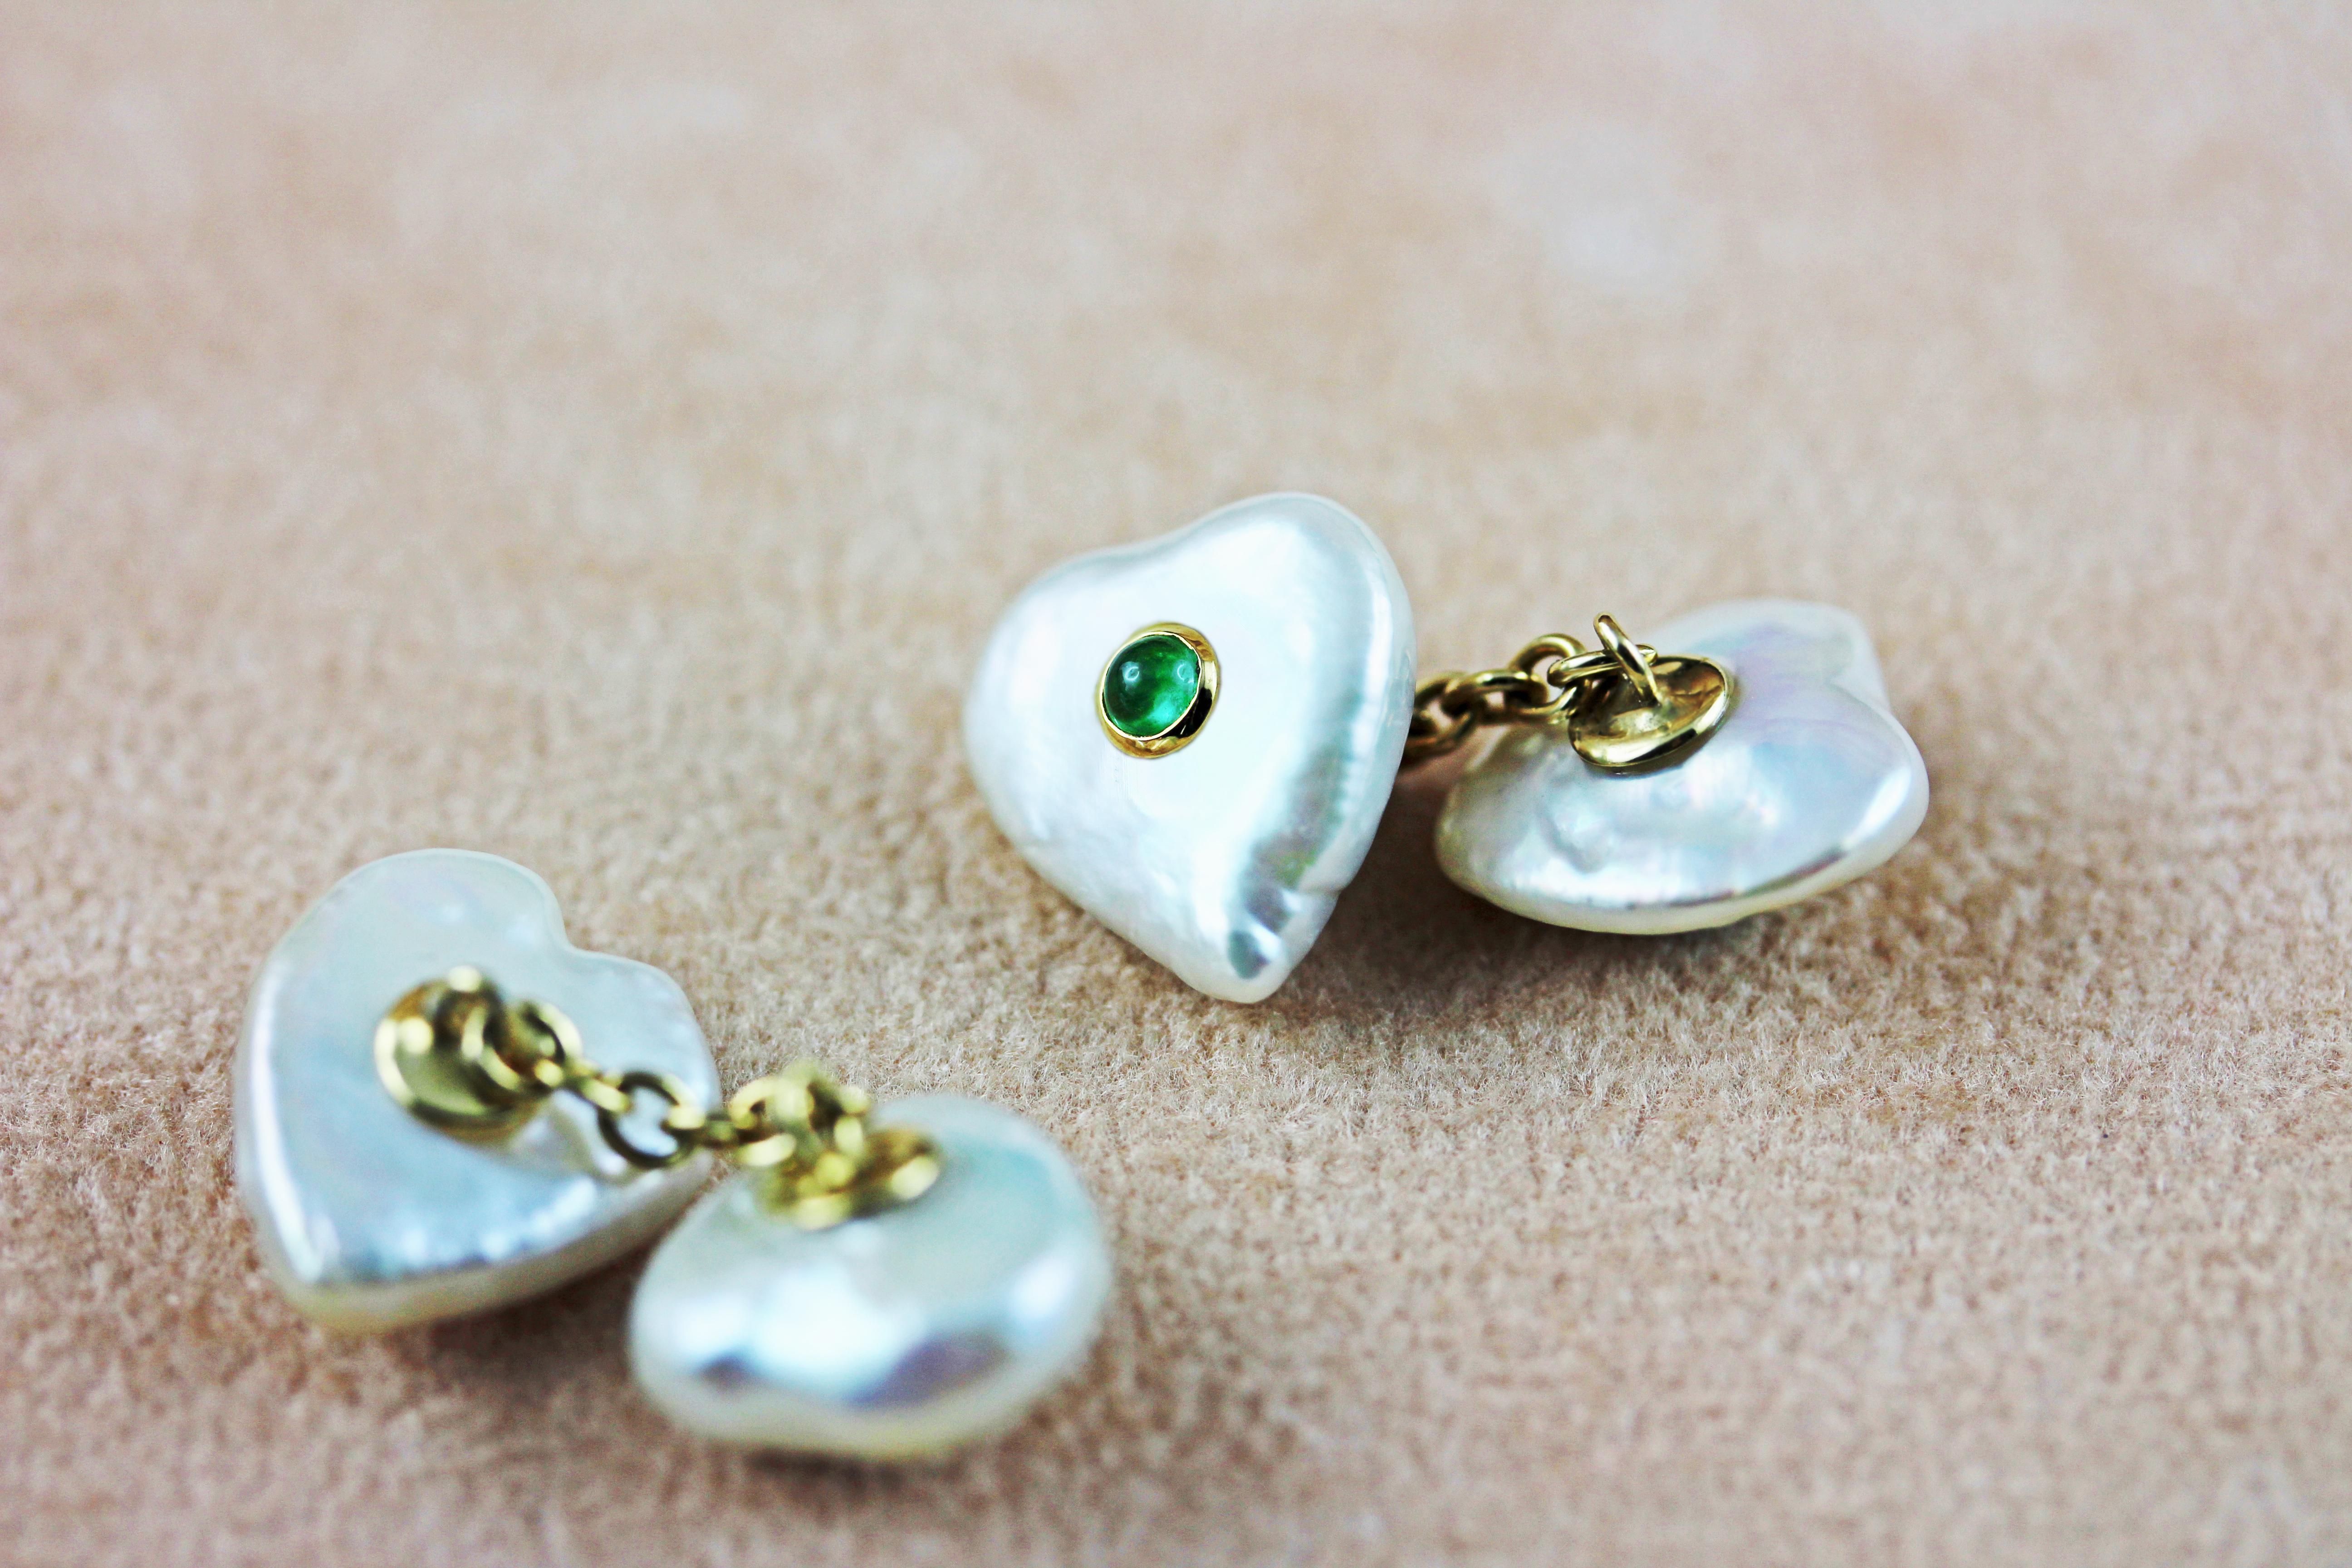 Die herzförmigen Keshi-Perlen, die sowohl die Vorderseite als auch den Verschluss dieser auffälligen Manschettenknöpfe bilden, sind einzigartige Akzente, die dieses Stück charmant und zeitlos machen. 
Jede Perle ist in der Mitte mit einem